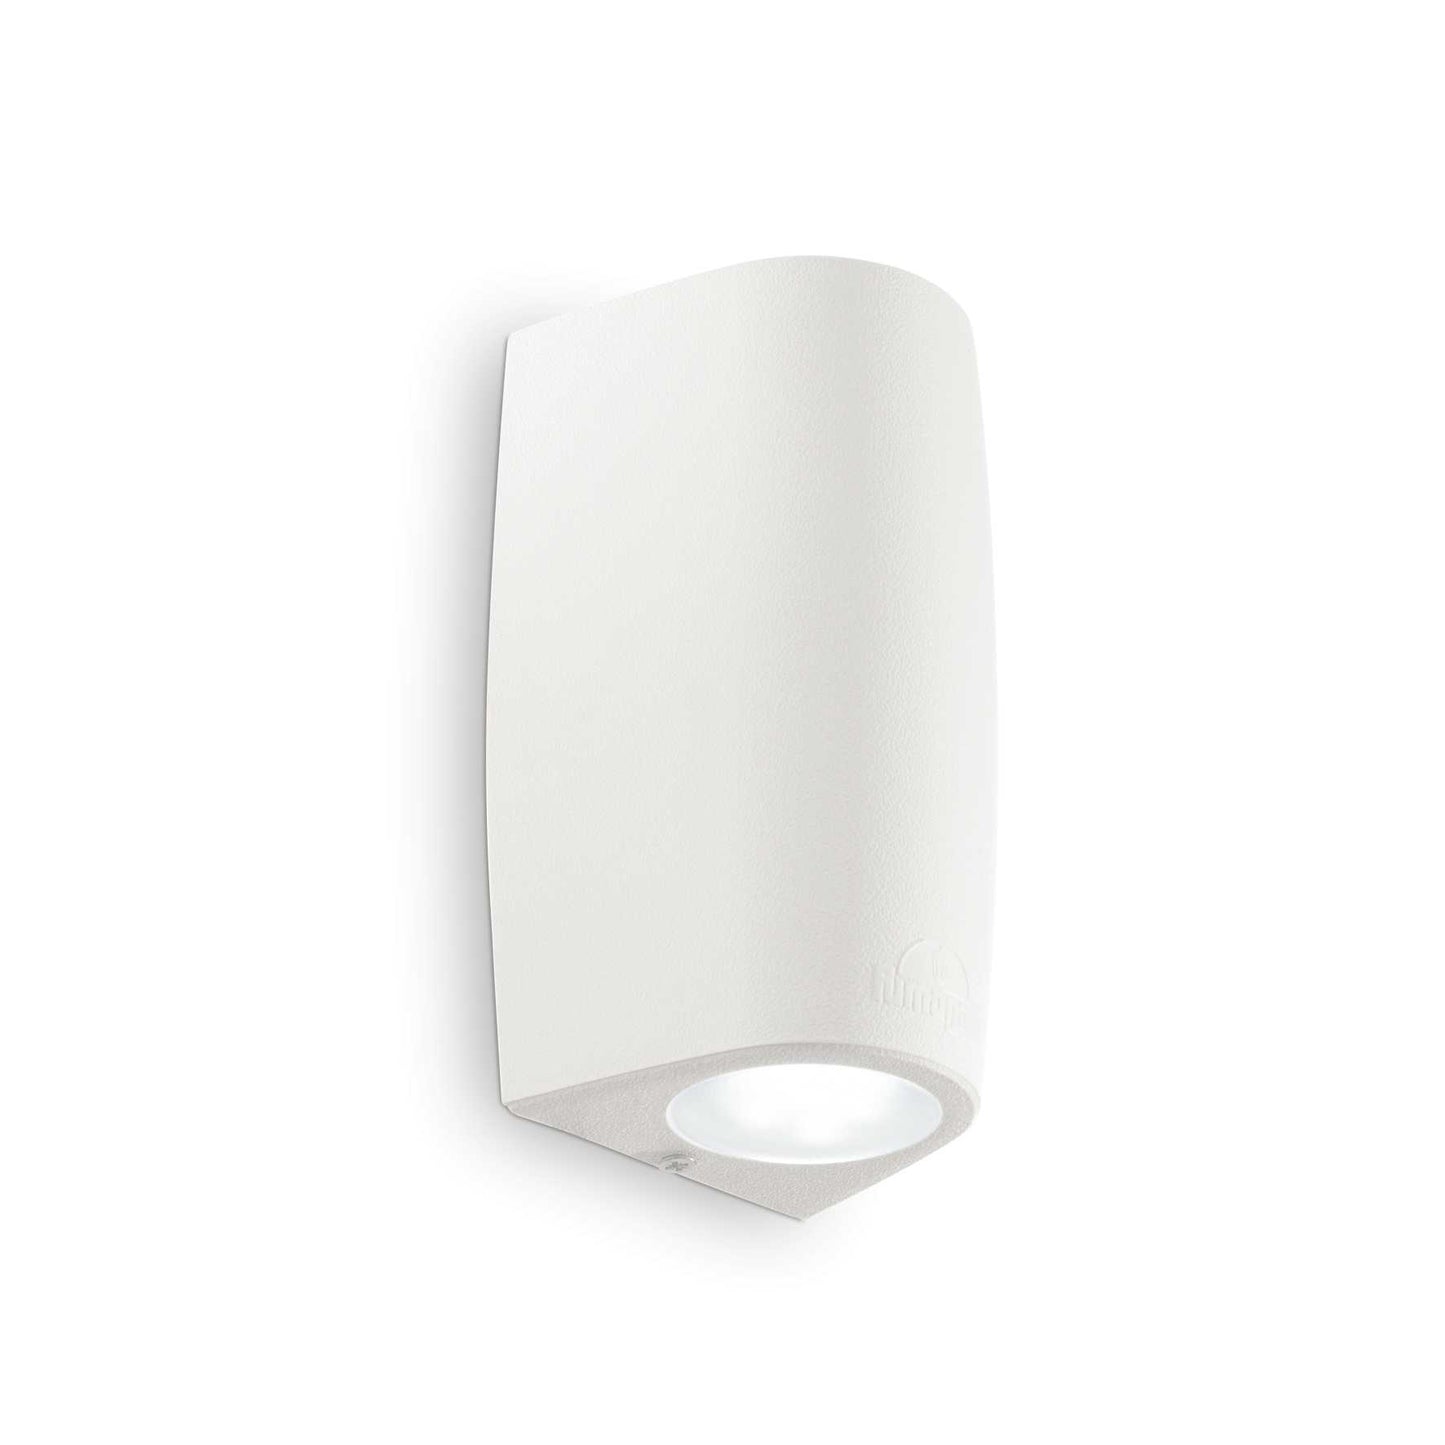 Idealer Lux 147772 Keope AP2 kleine weiße Wandlampe